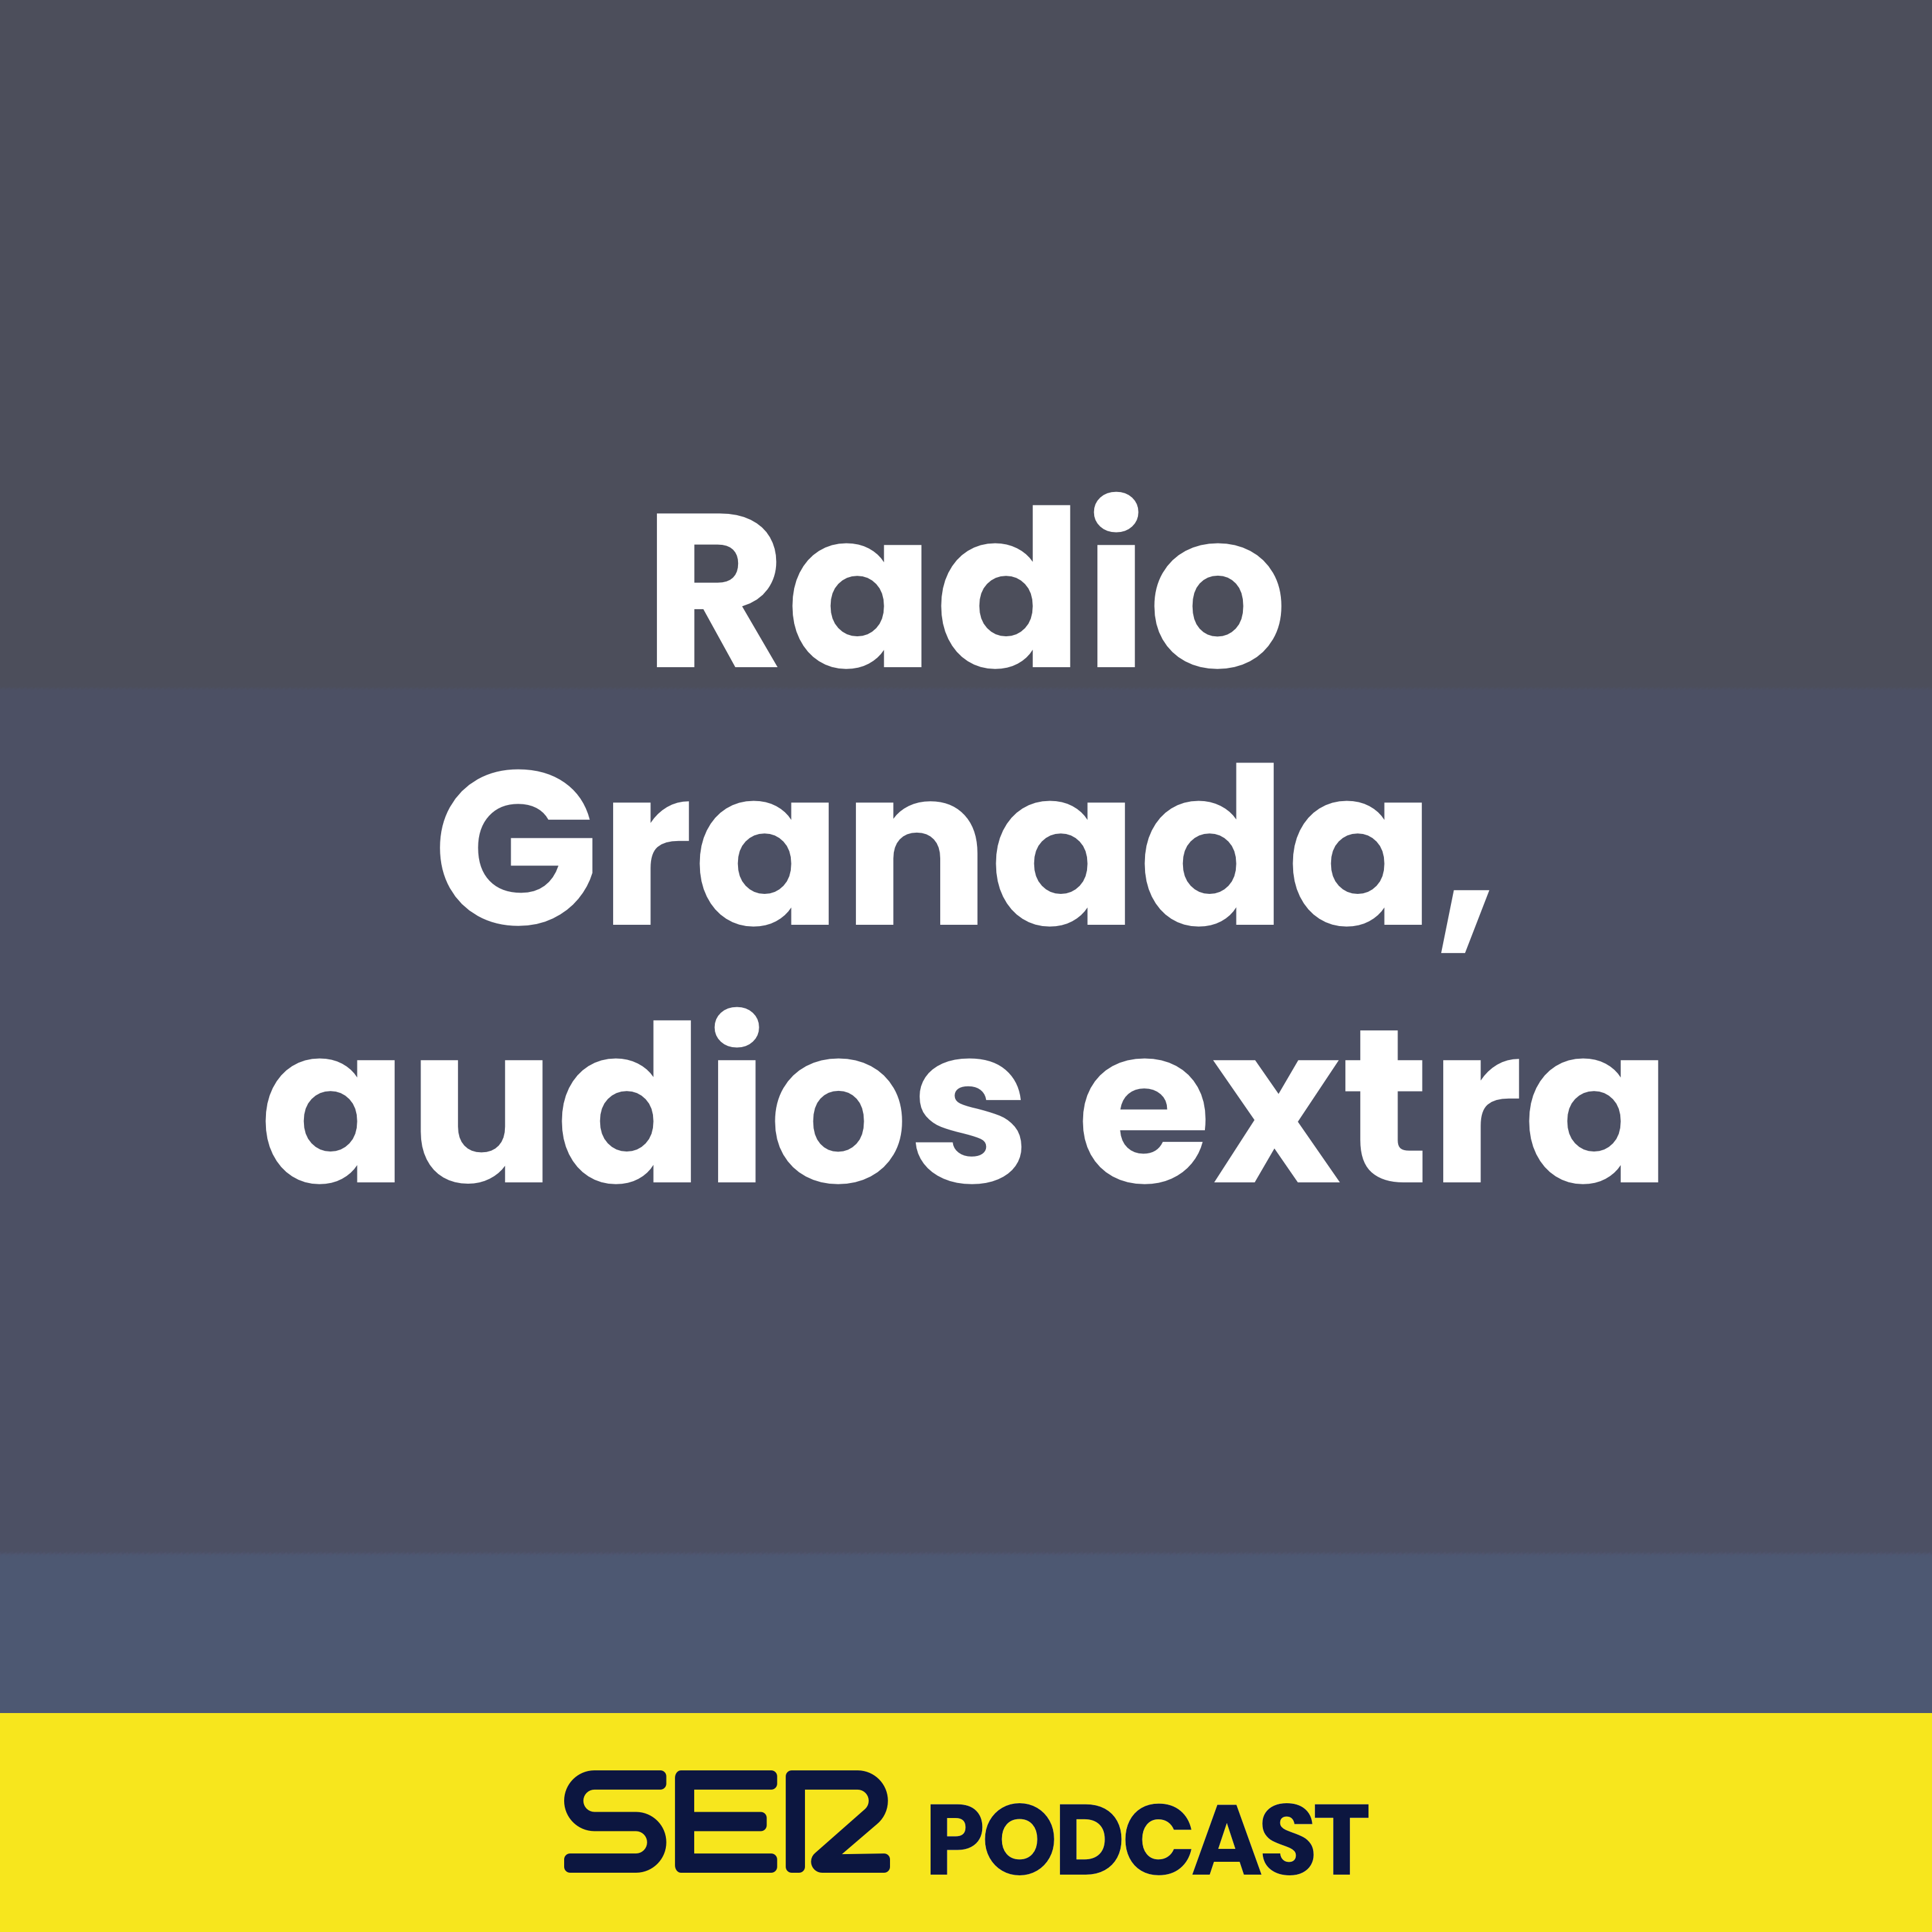 Radio Granada, audios extra